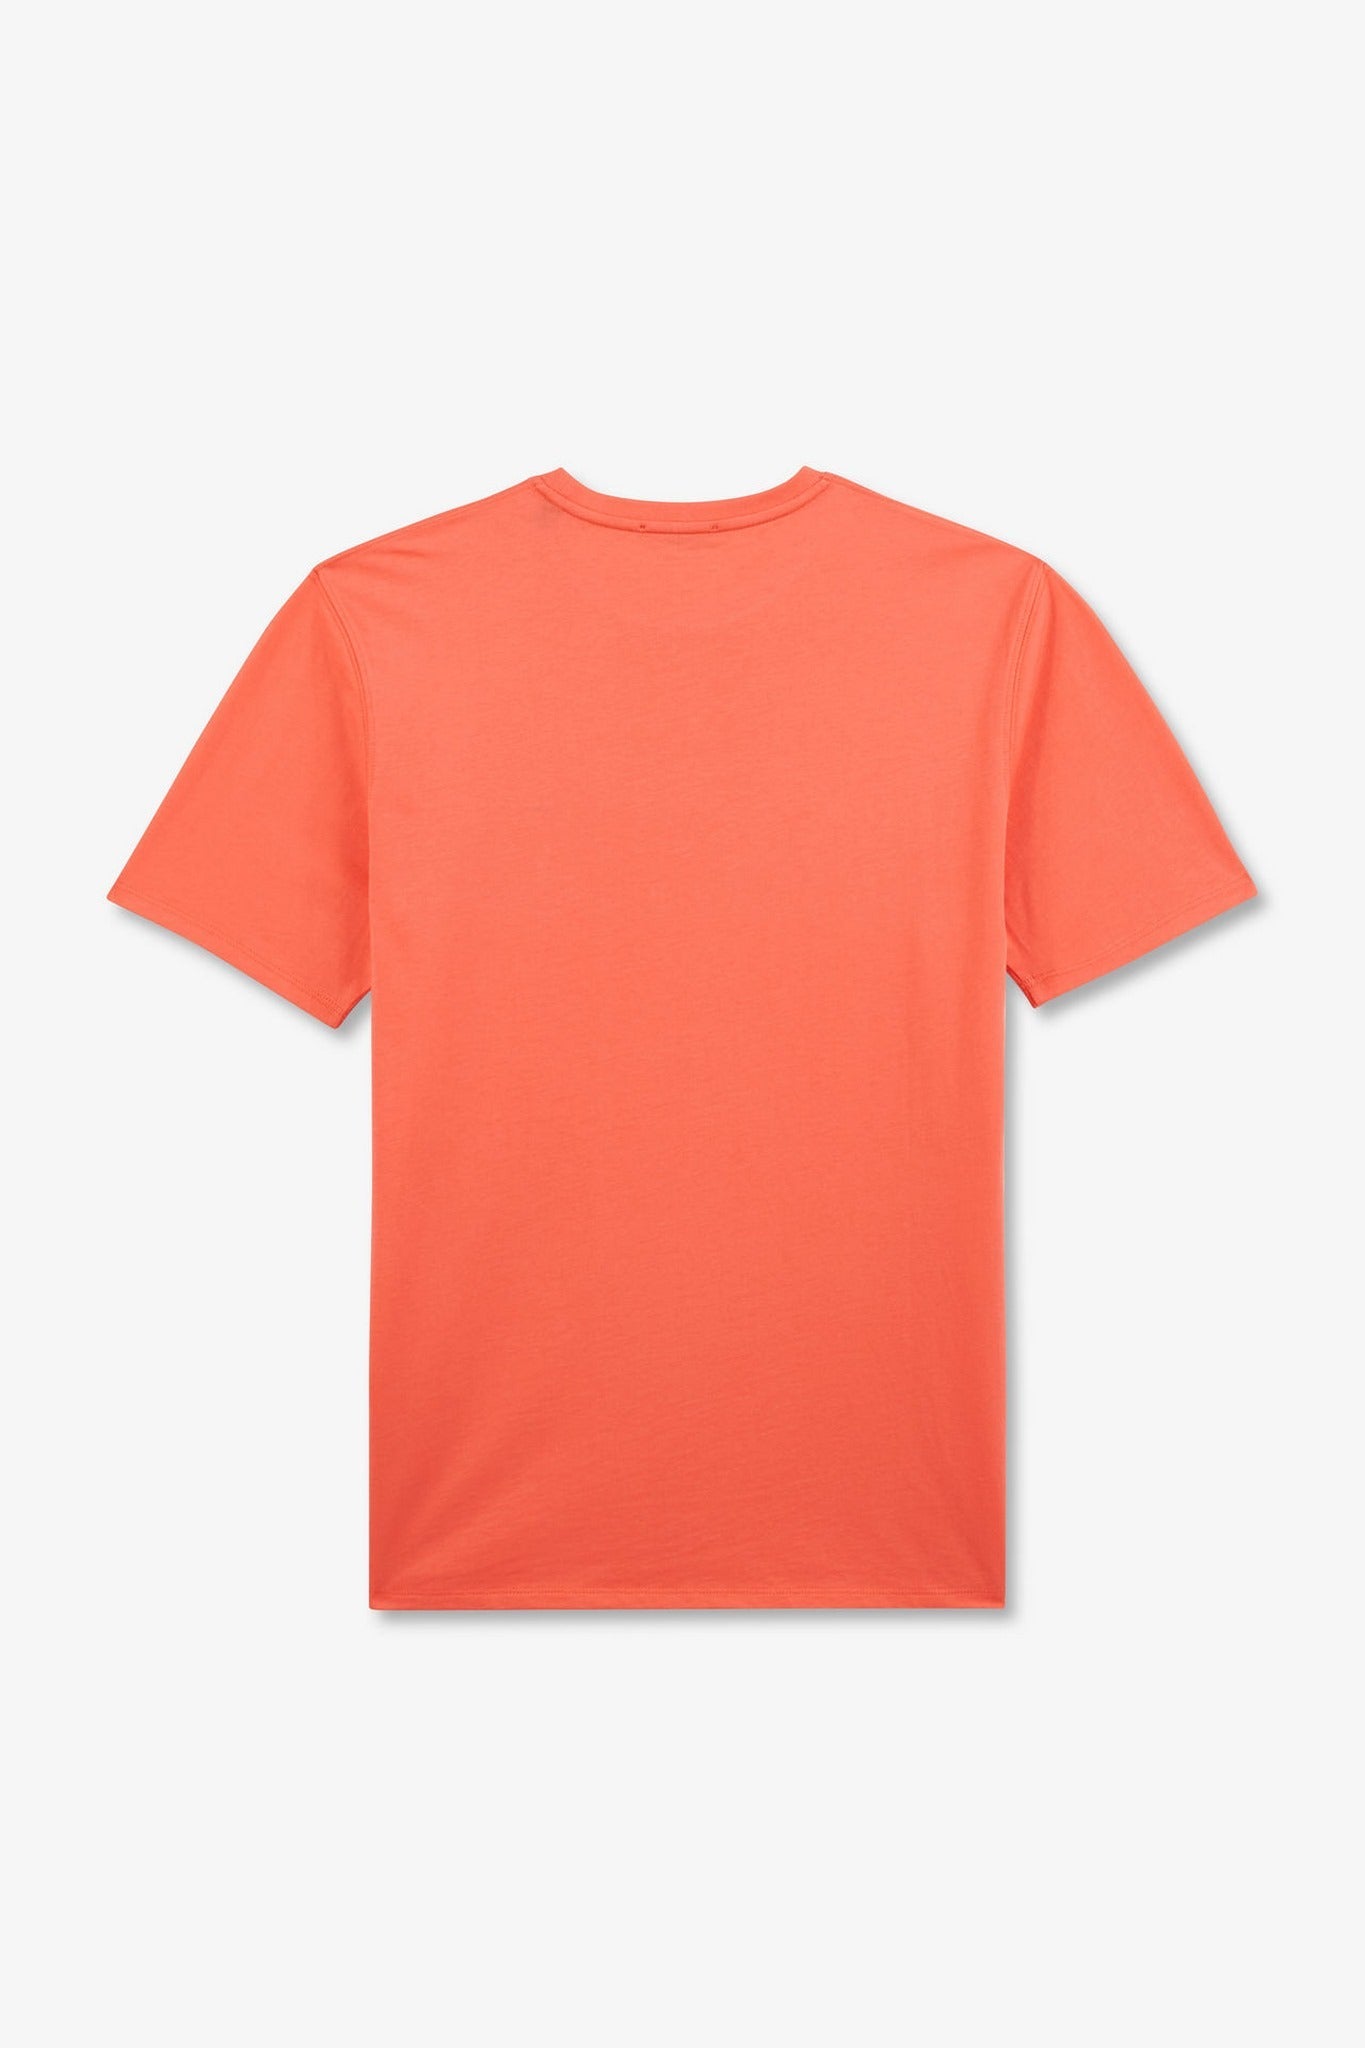 T-shirt rose saumon à manches courtes - Image 4